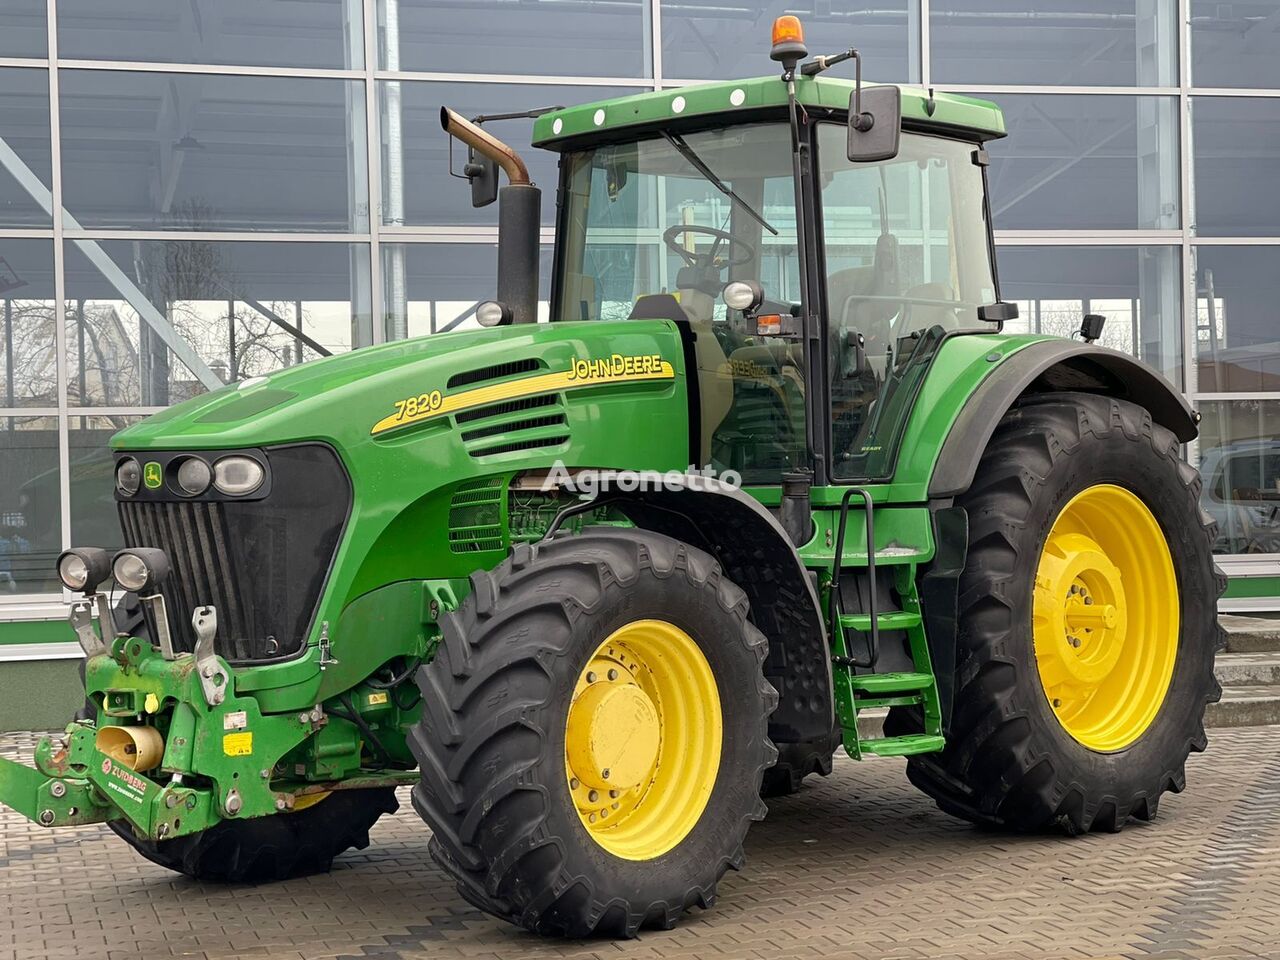 John Deere 7820 wheel tractor